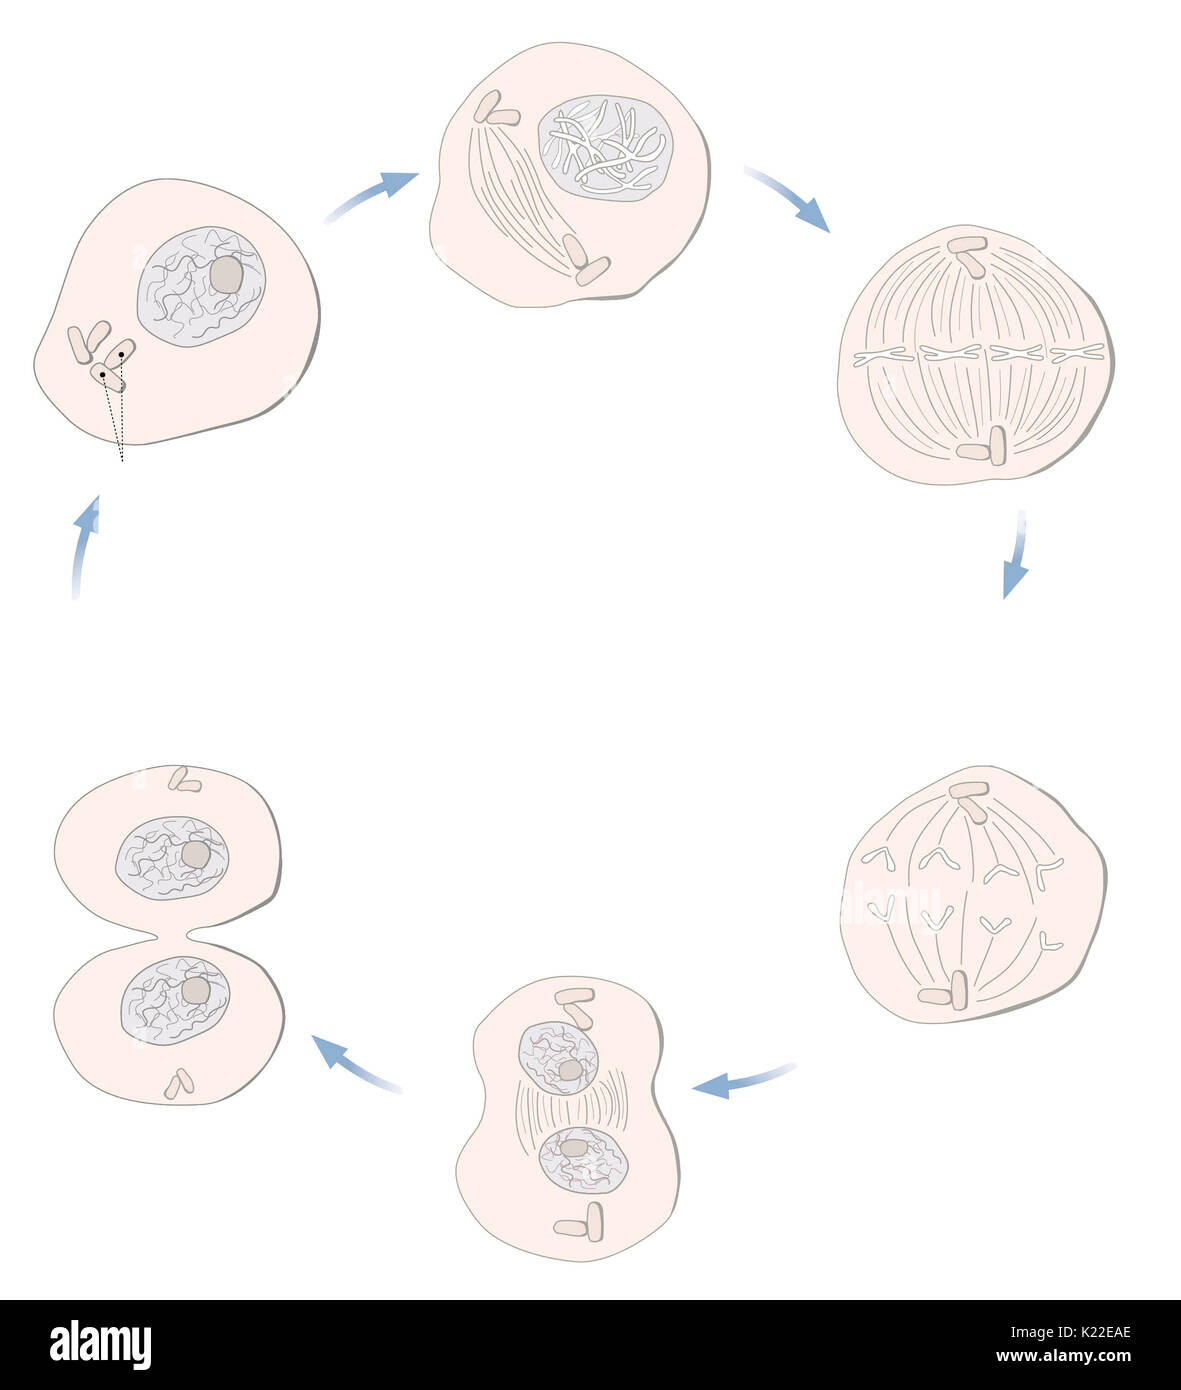 Todos los mecanismos de división celular que permiten la formación de dos células hijas idénticas a partir de una célula madre. Foto de stock